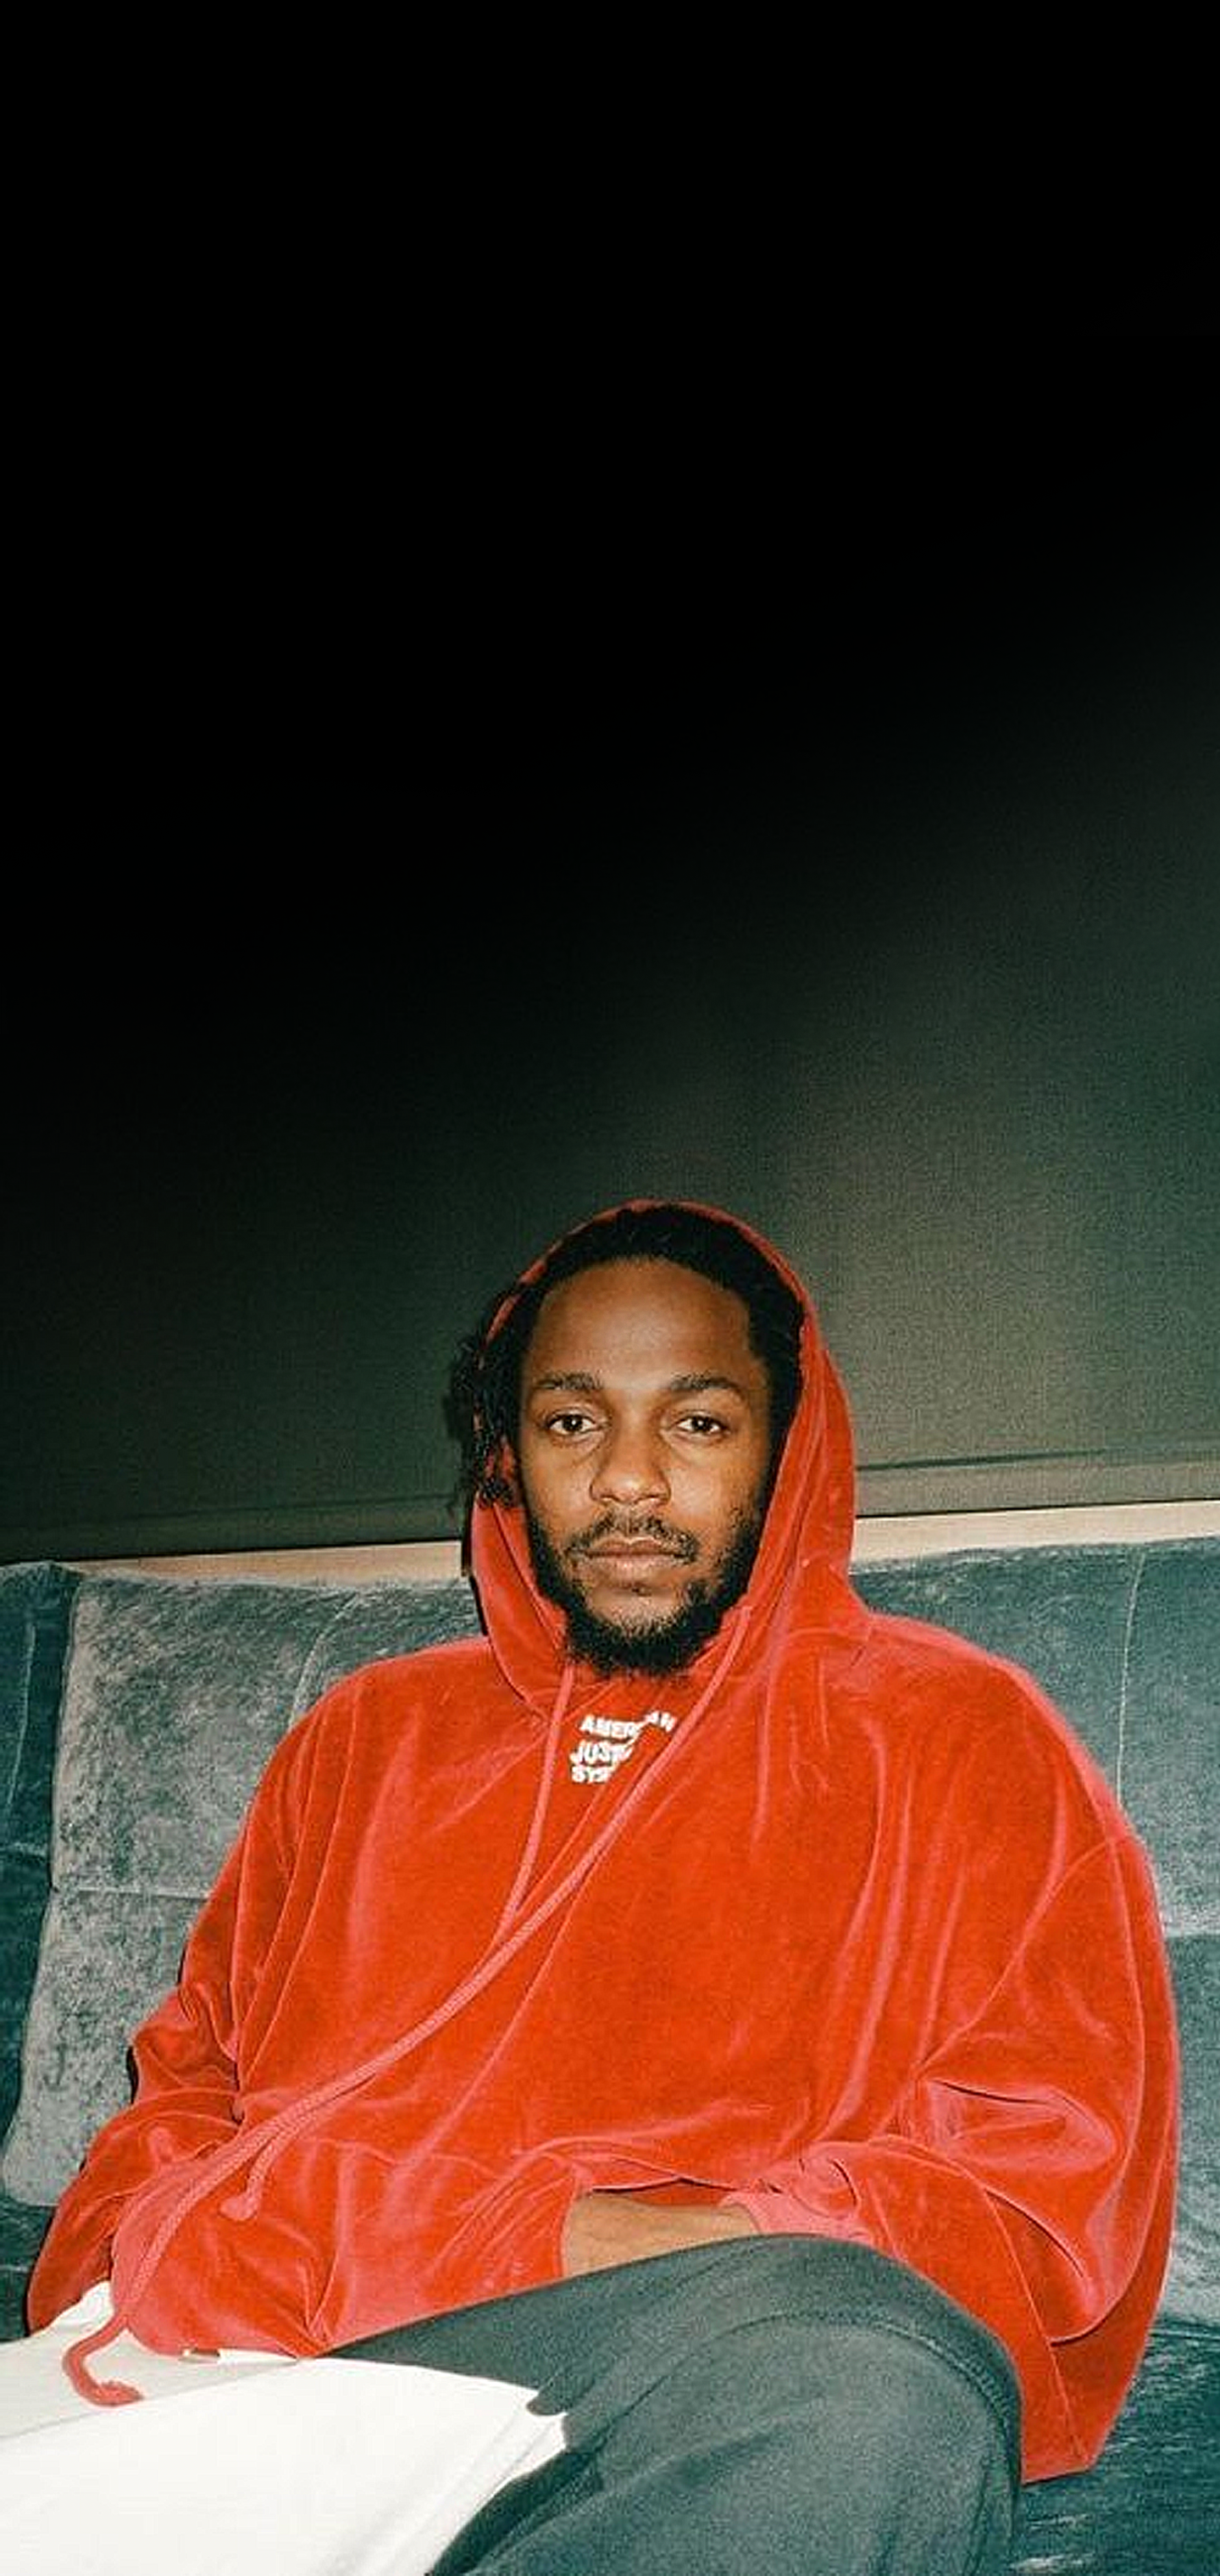 Kendrick Lamar 90's Aesthetic Wallpaper .reddit.com